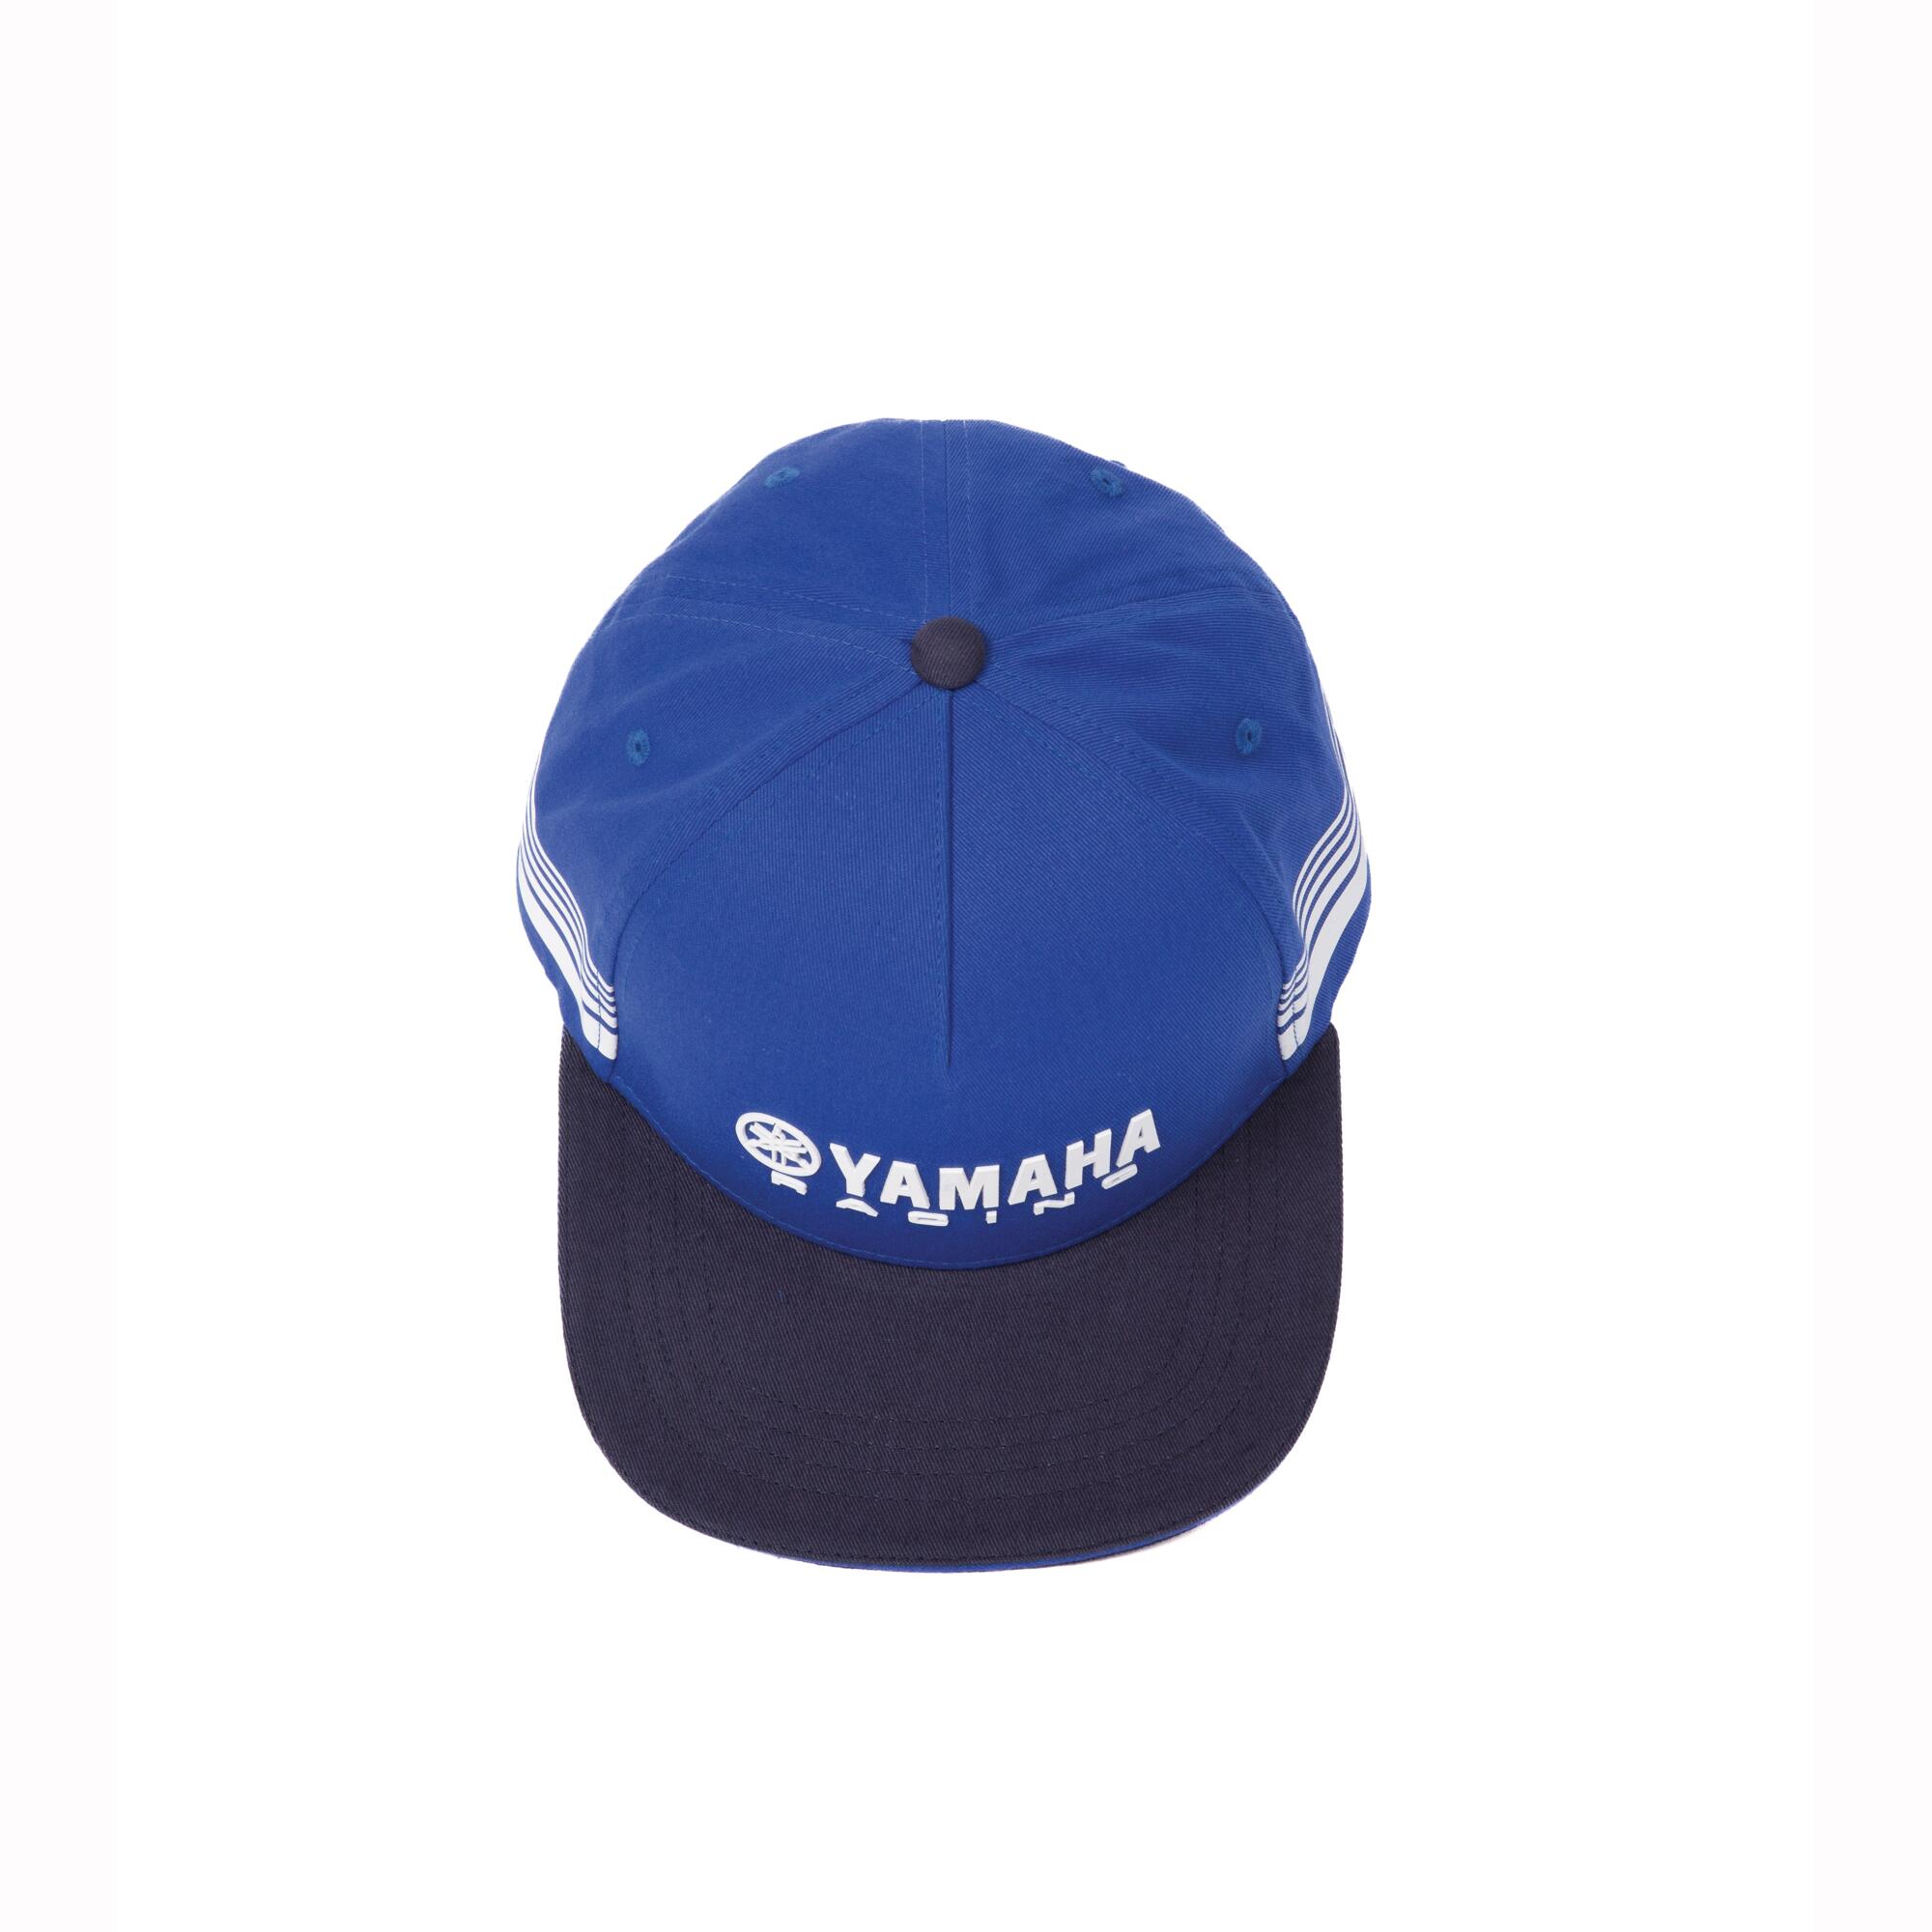 Accessoire yamaha casquette de race paddock - adultes bleu noir